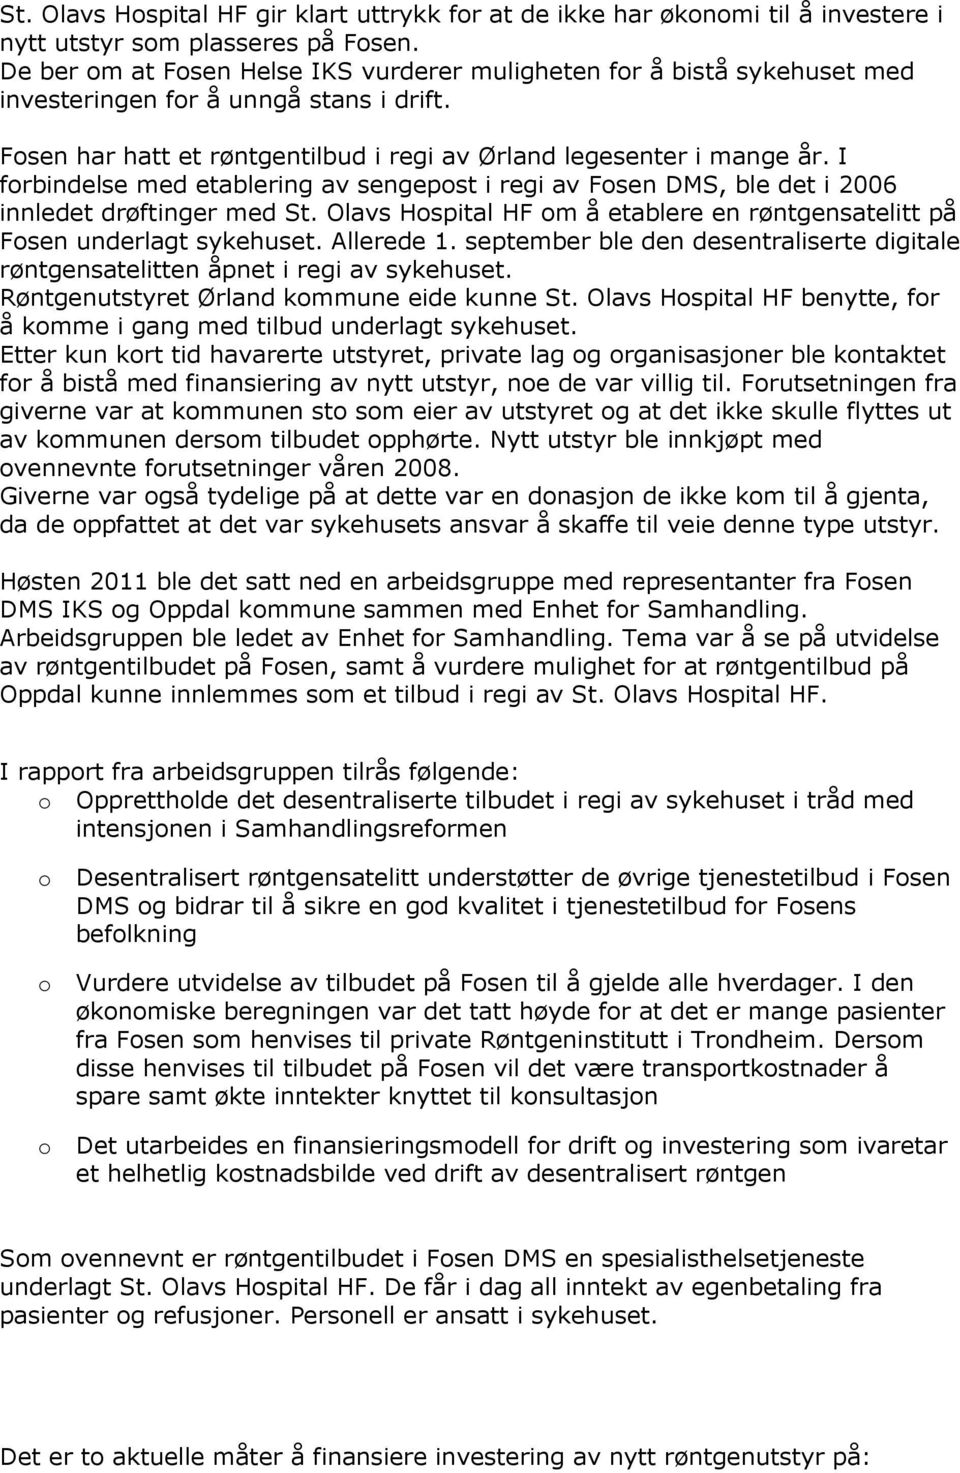 I forbindelse med etablering av sengepost i regi av Fosen DMS, ble det i 2006 innledet drøftinger med St. Olavs Hospital HF om å etablere en røntgensatelitt på Fosen underlagt sykehuset. Allerede 1.